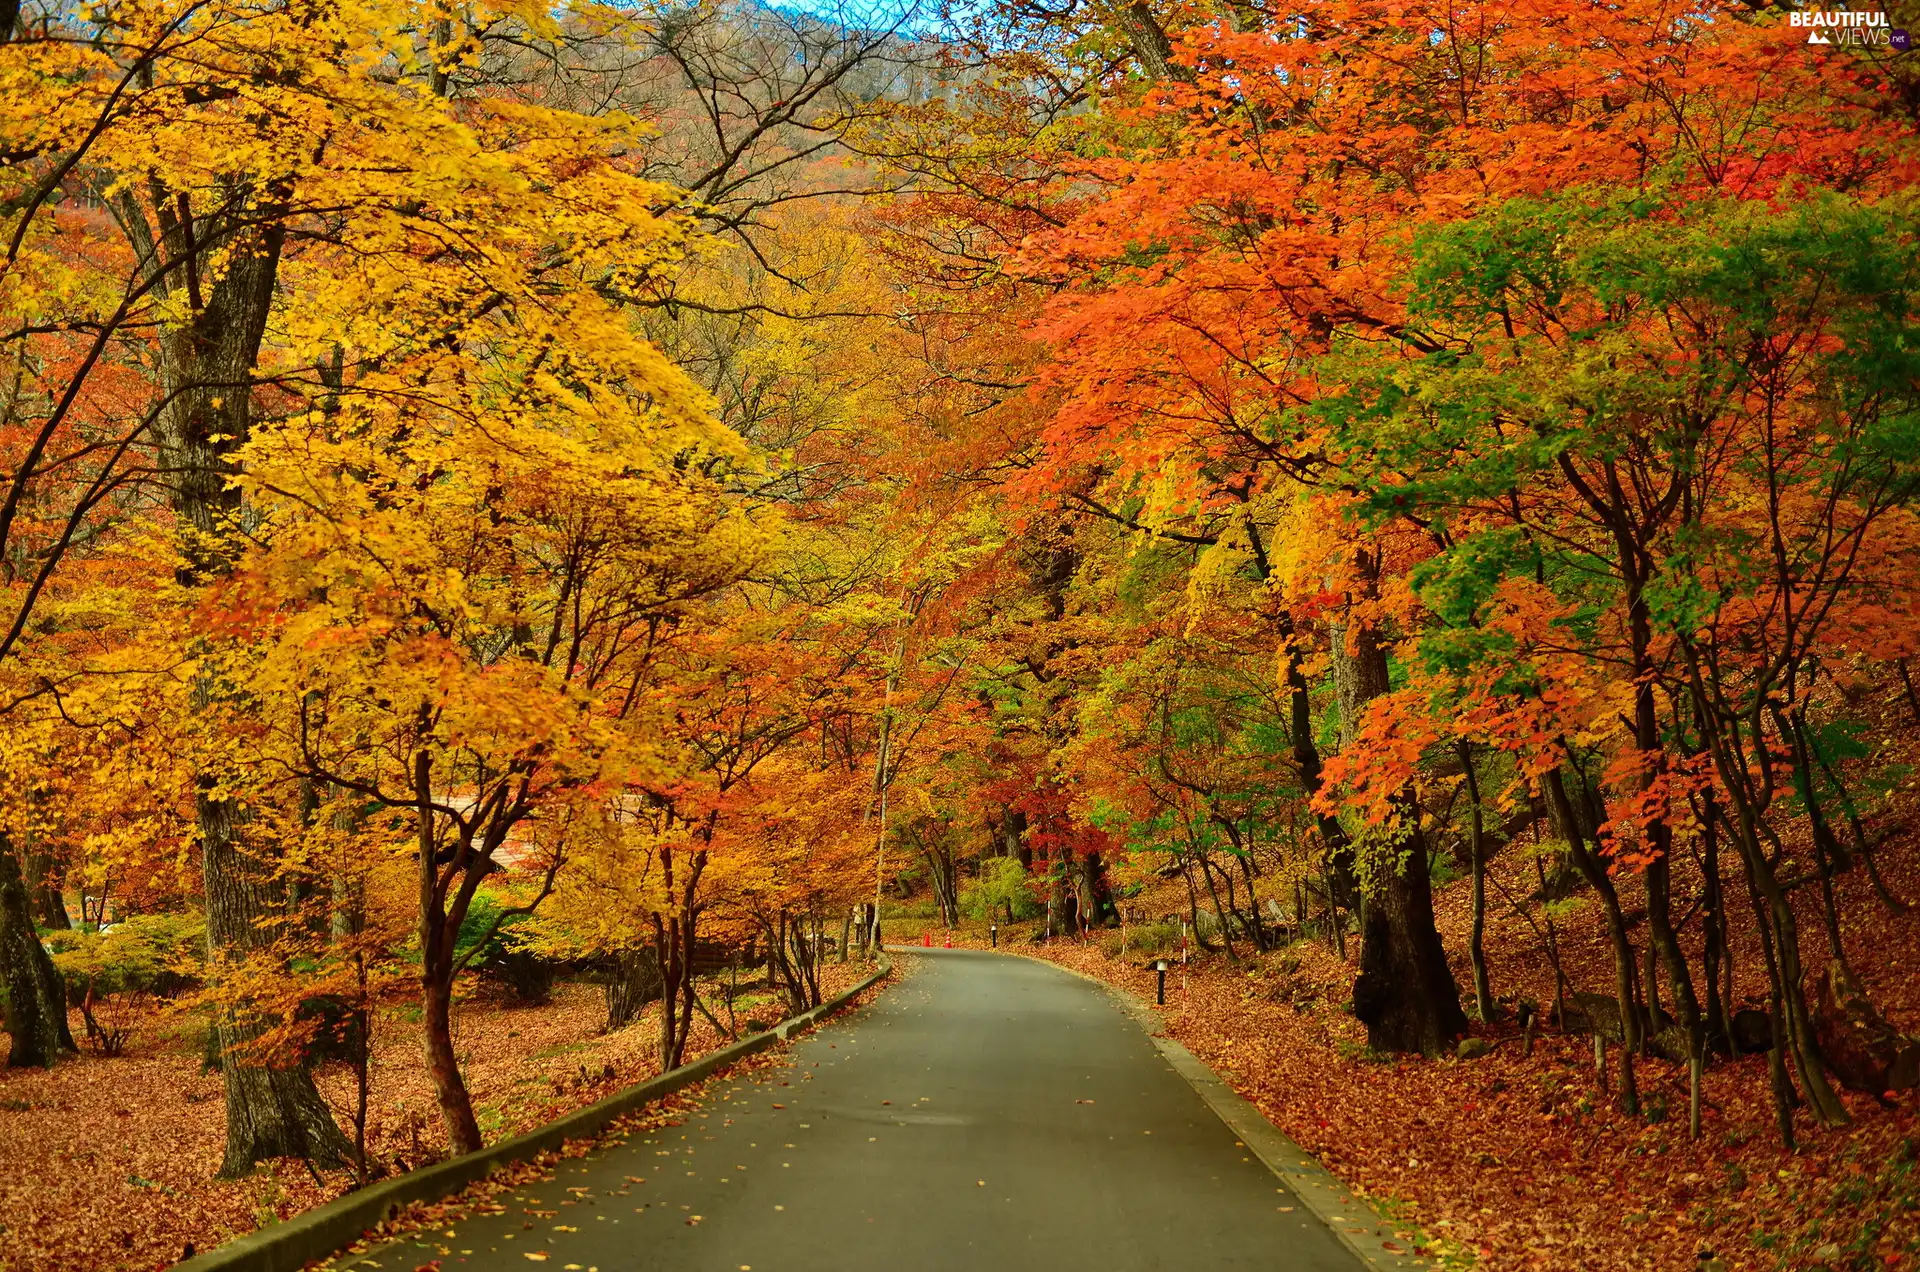 Way, viewes, Park, autumn, trees, lane, Leaf